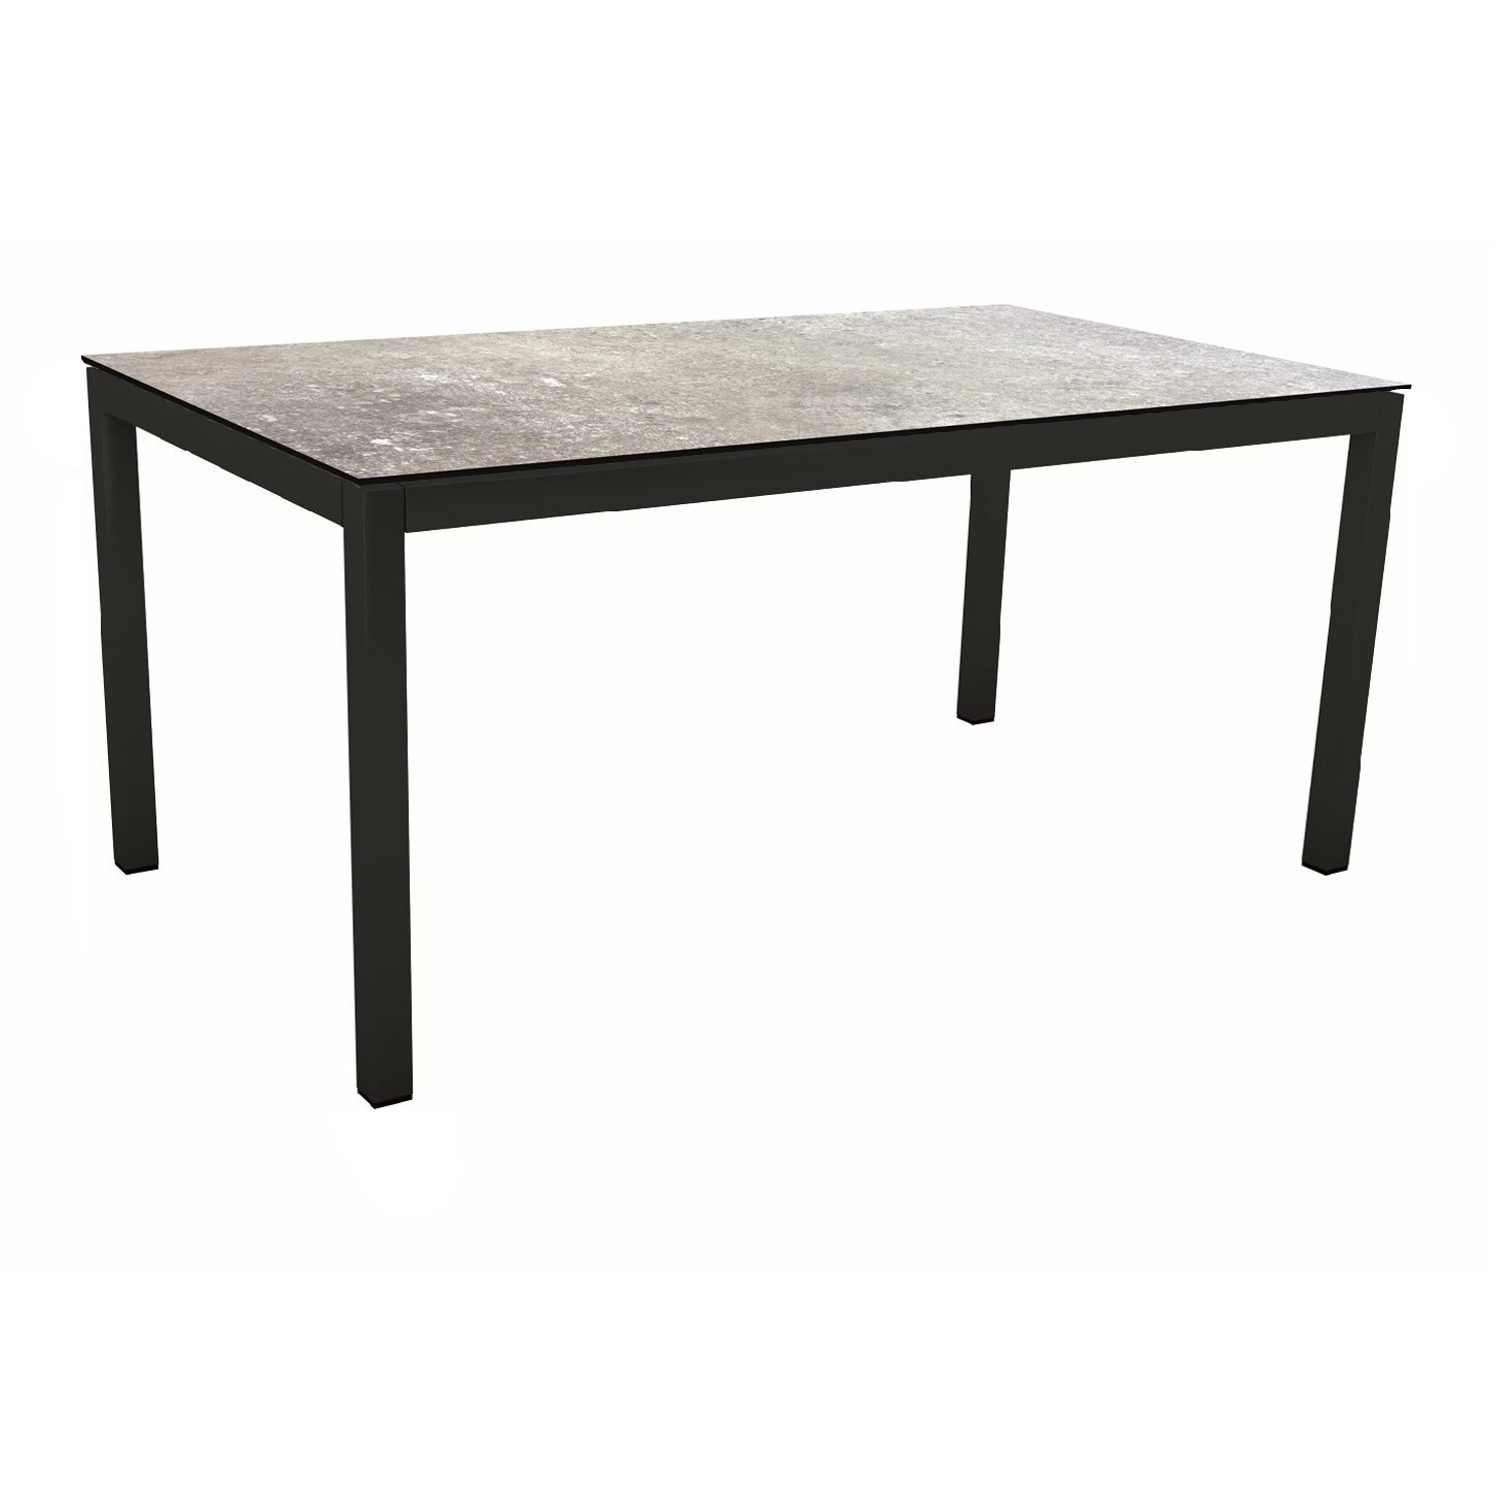 Stern Gartentisch, Gestell Aluminium schwarz matt, Tischplatte HPL Vintage Stone, 130x80 cm